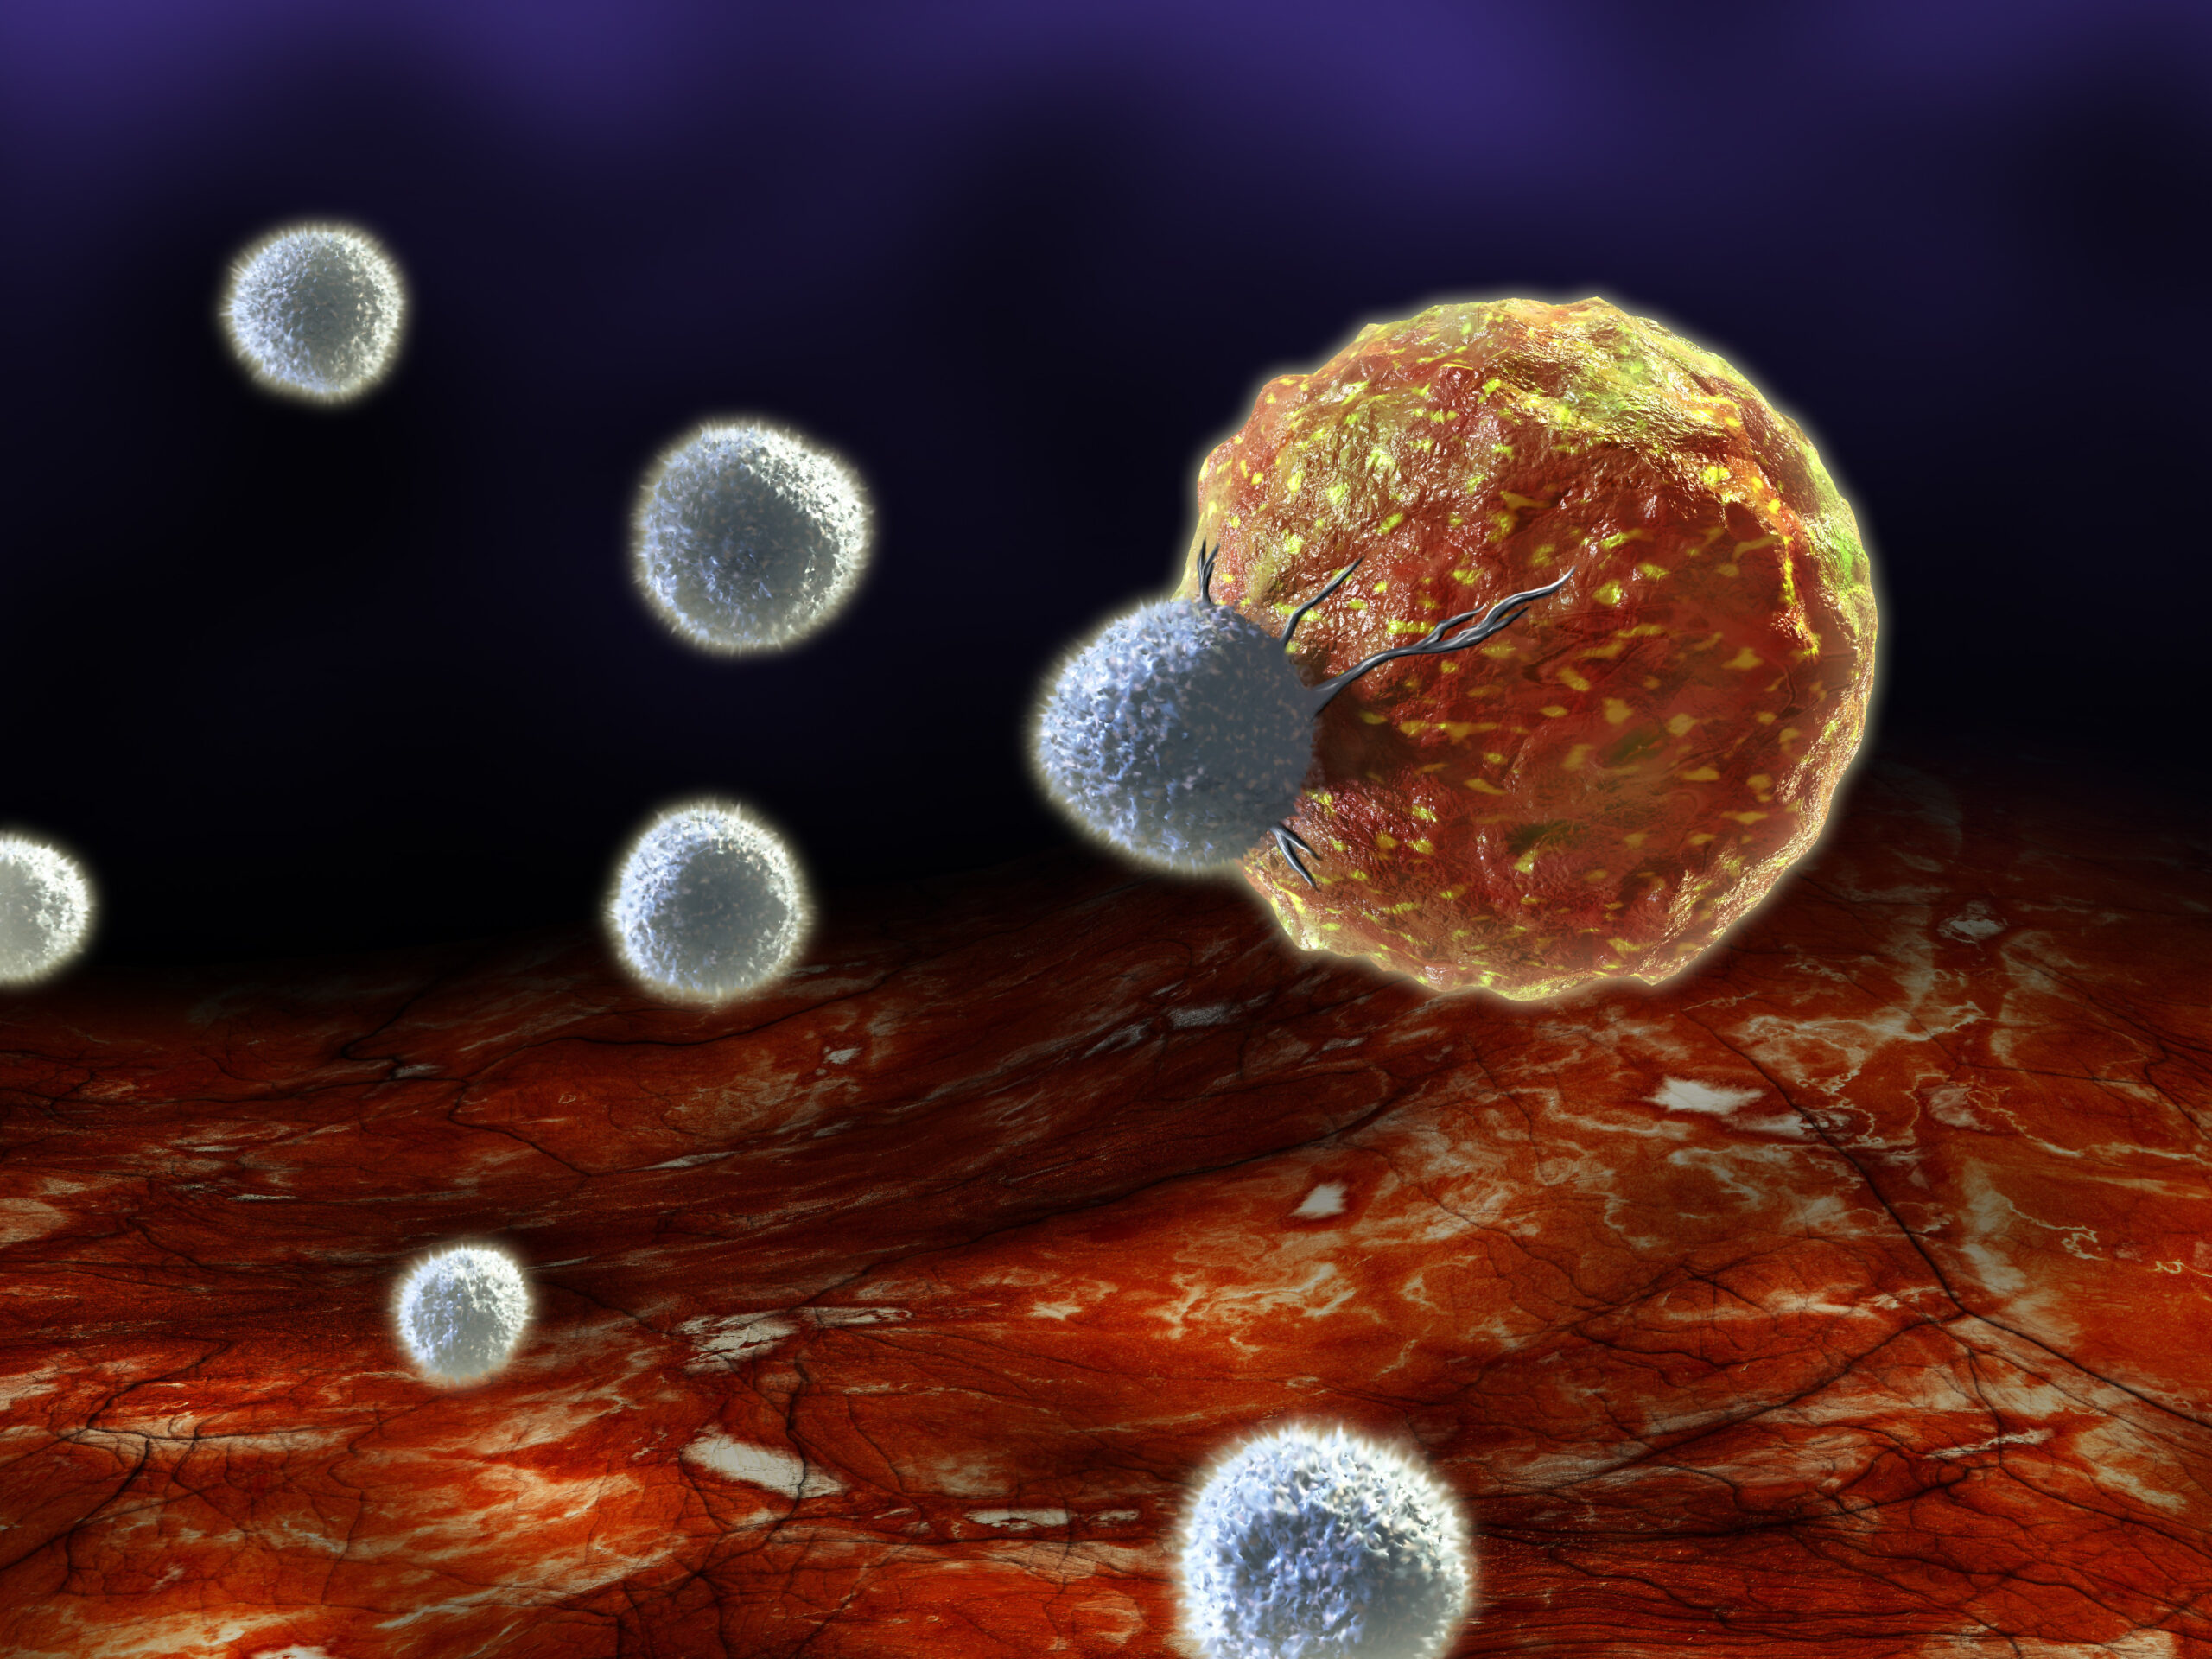 Νέα προσέγγιση ανοσοθεραπείας αποδίδει στην καταστροφή καρκινικών κυττάρων